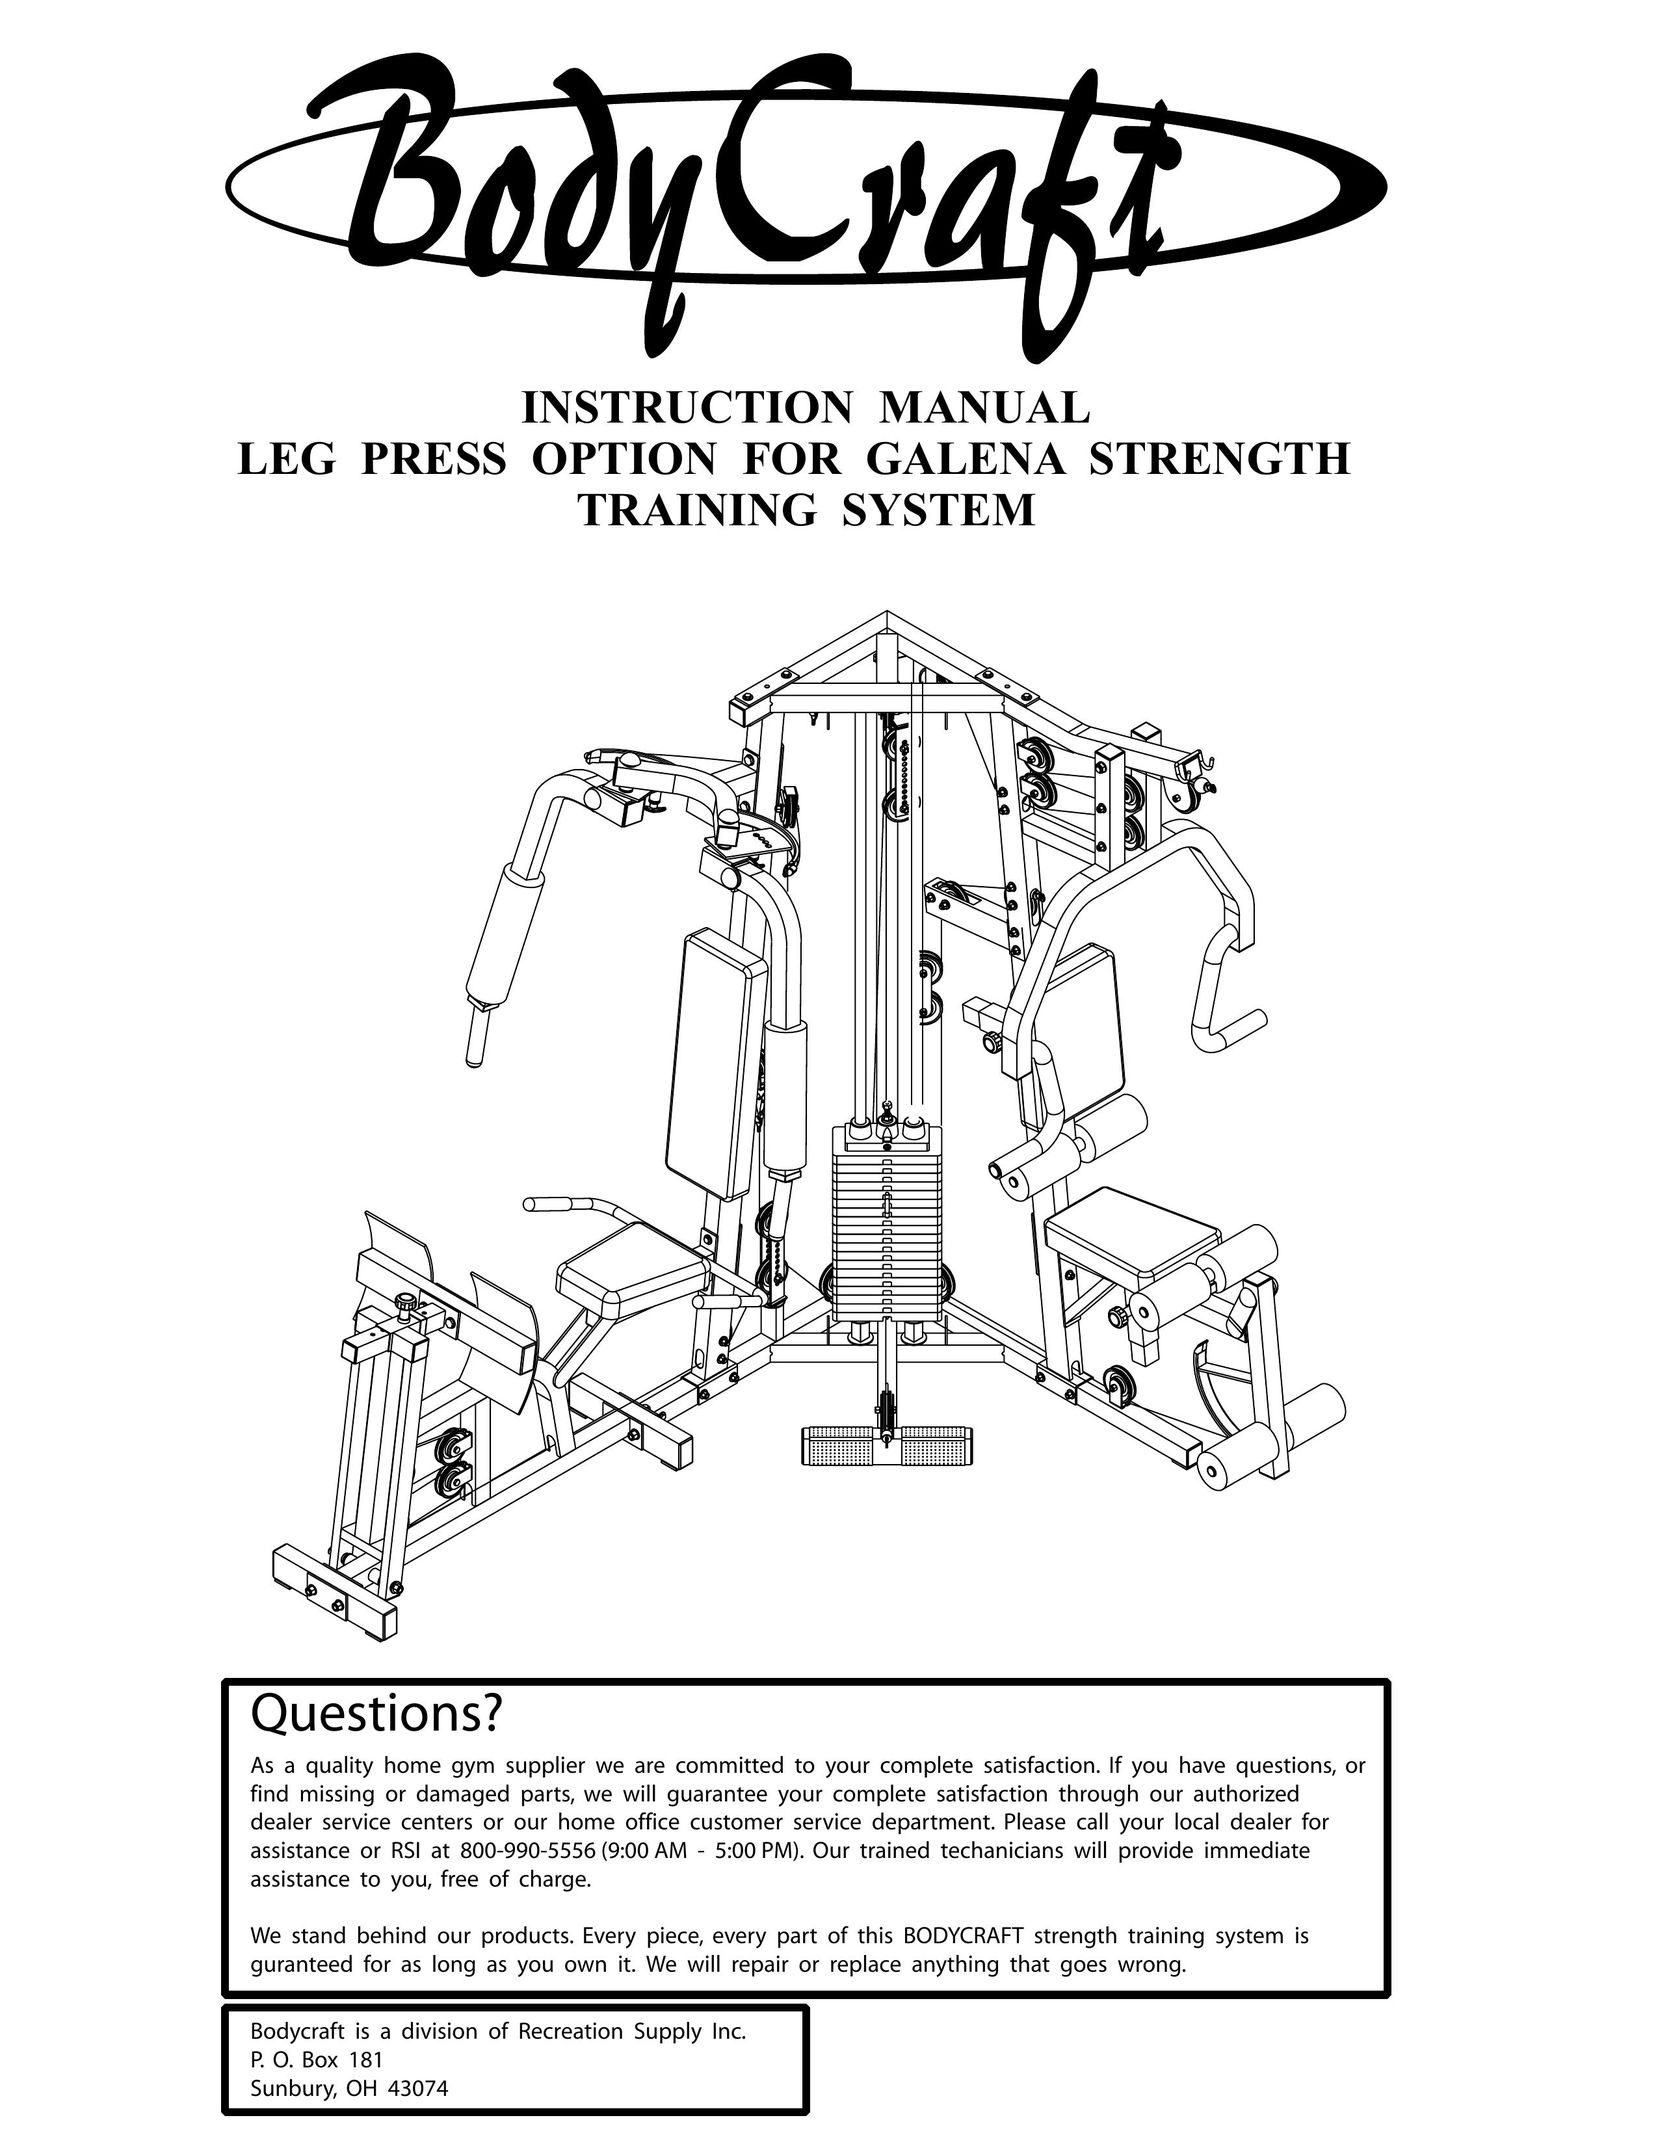 BodyCraft GALENA STRENGTH Home Gym User Manual